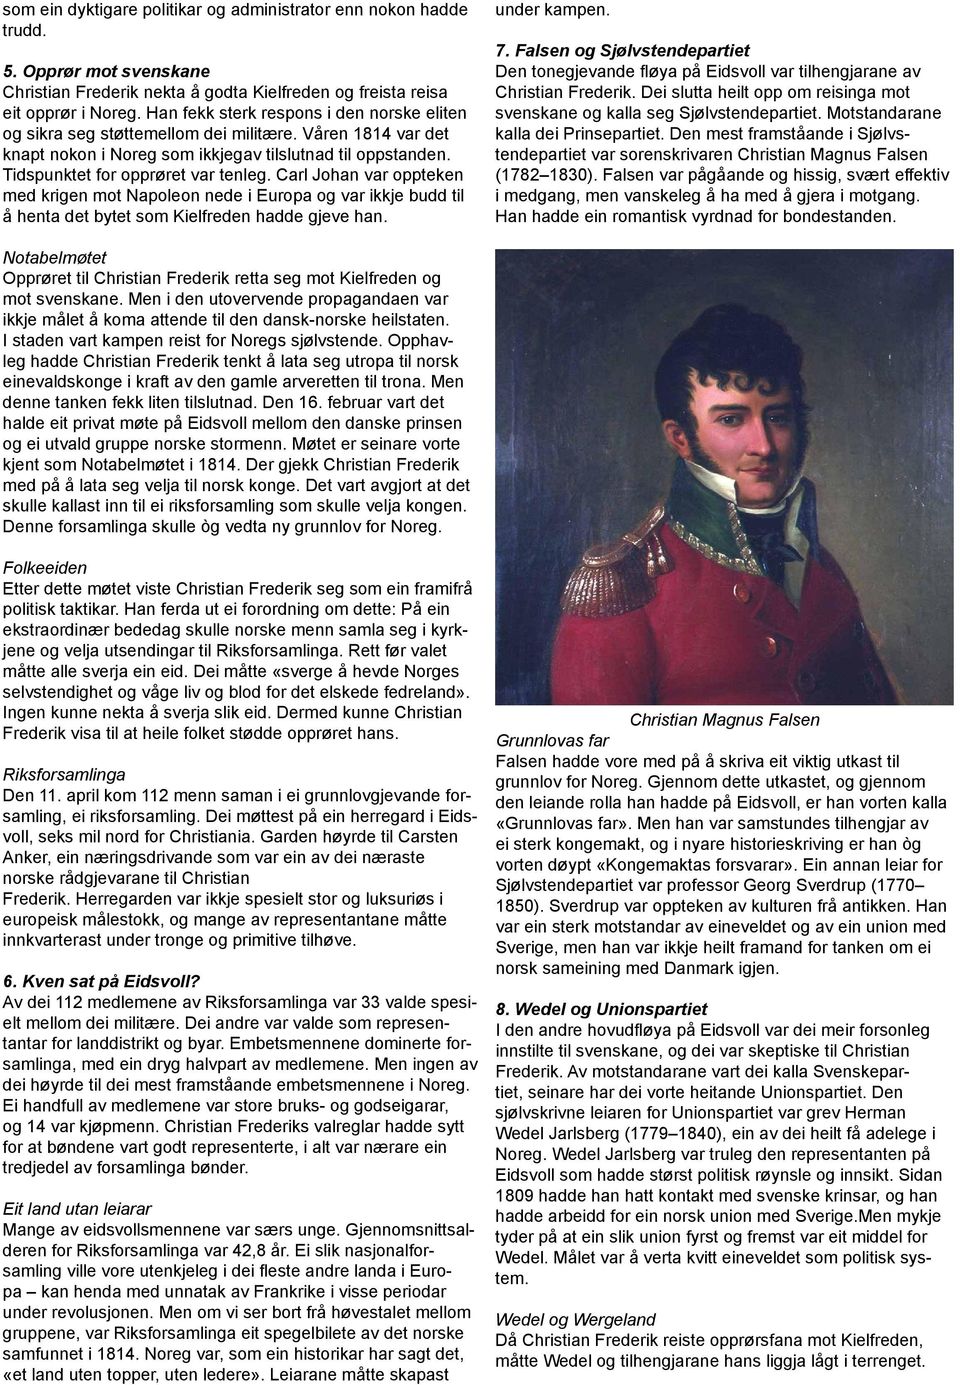 Carl Johan var oppteken med krigen mot Napoleon nede i Europa og var ikkje budd til å henta det bytet som Kielfreden hadde gjeve han. under kampen. 7.